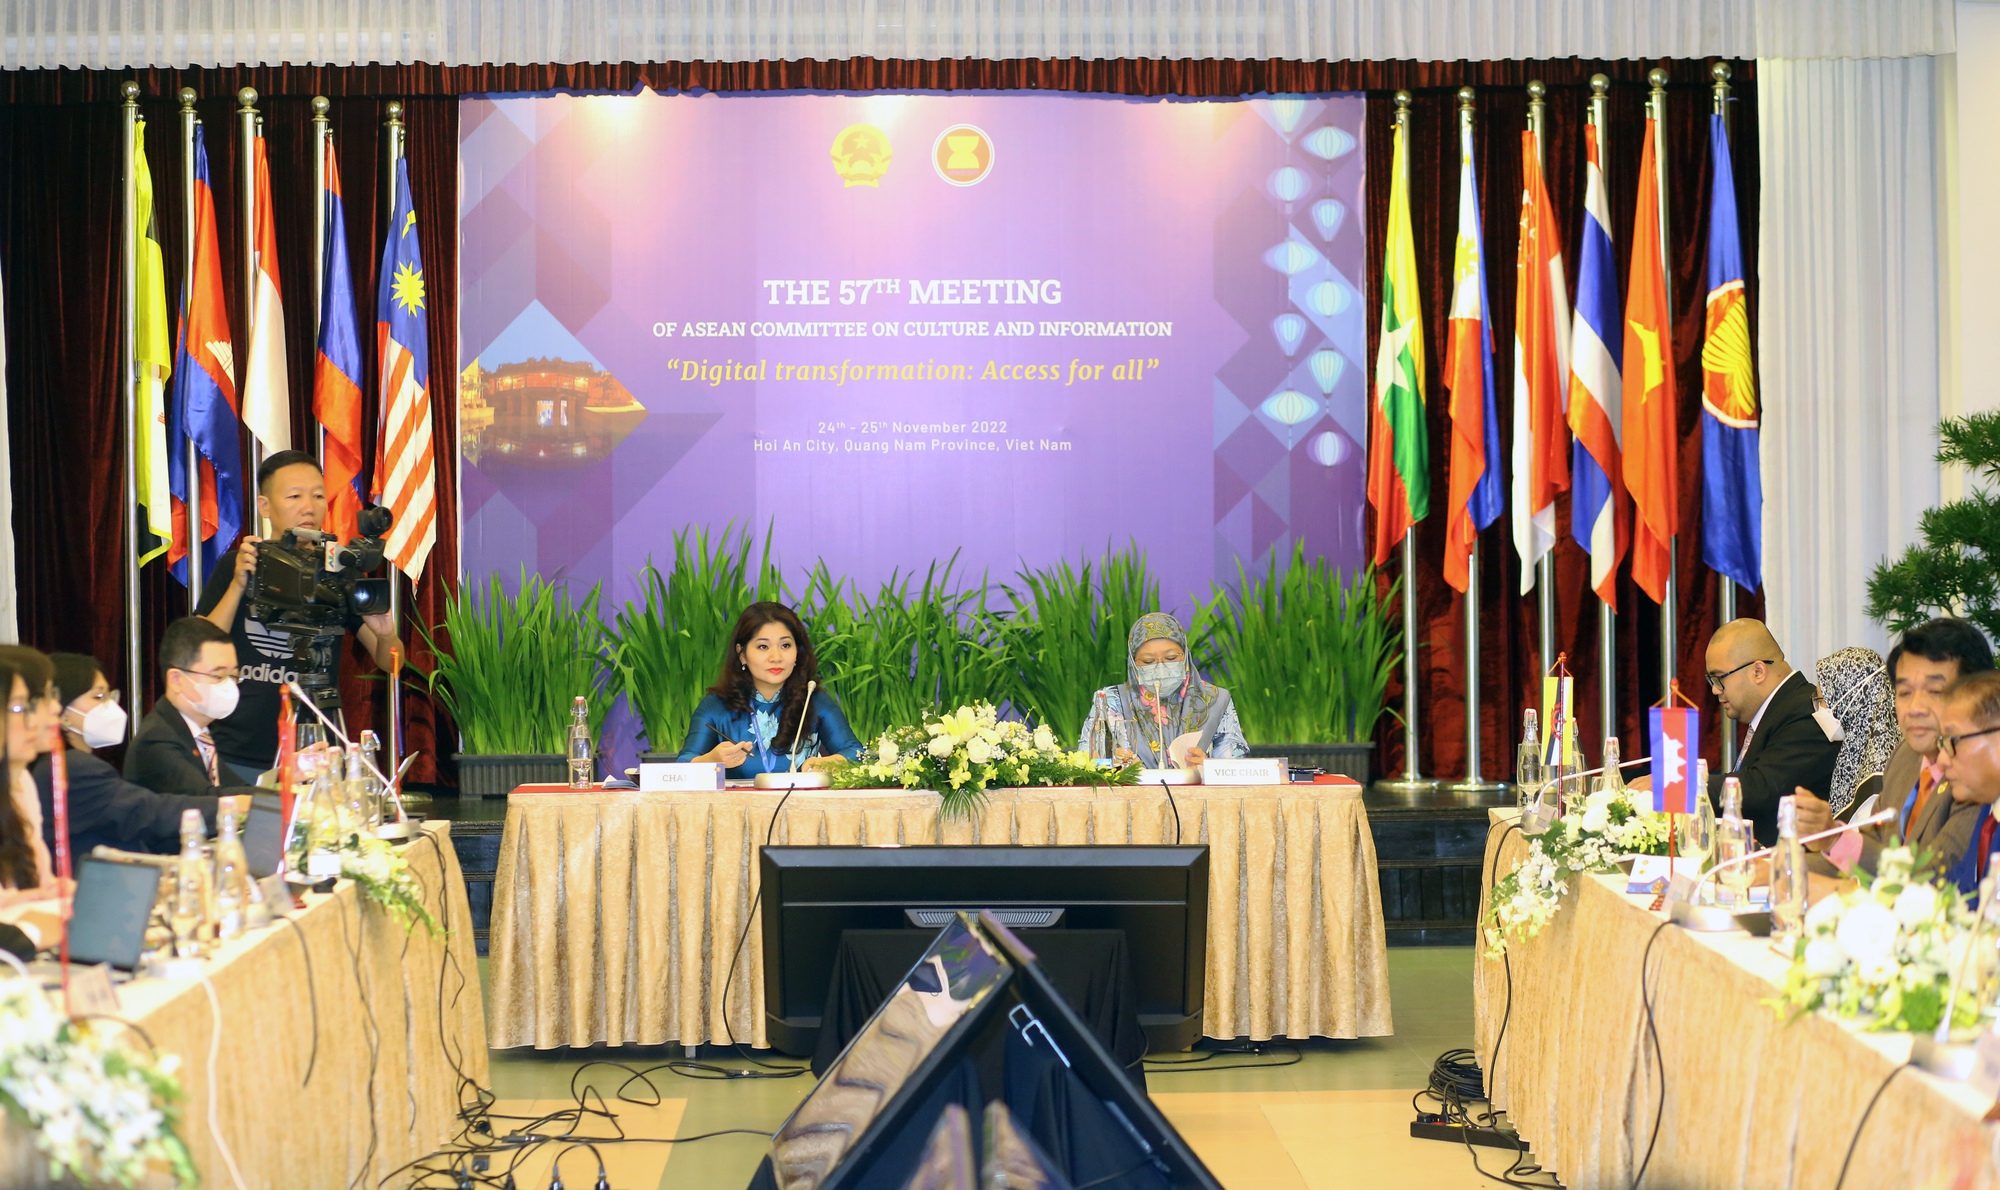 Tăng cường chuyển đổi số: Hướng đi mới trong hợp tác văn hóa, thông tin ASEAN - Ảnh 2.